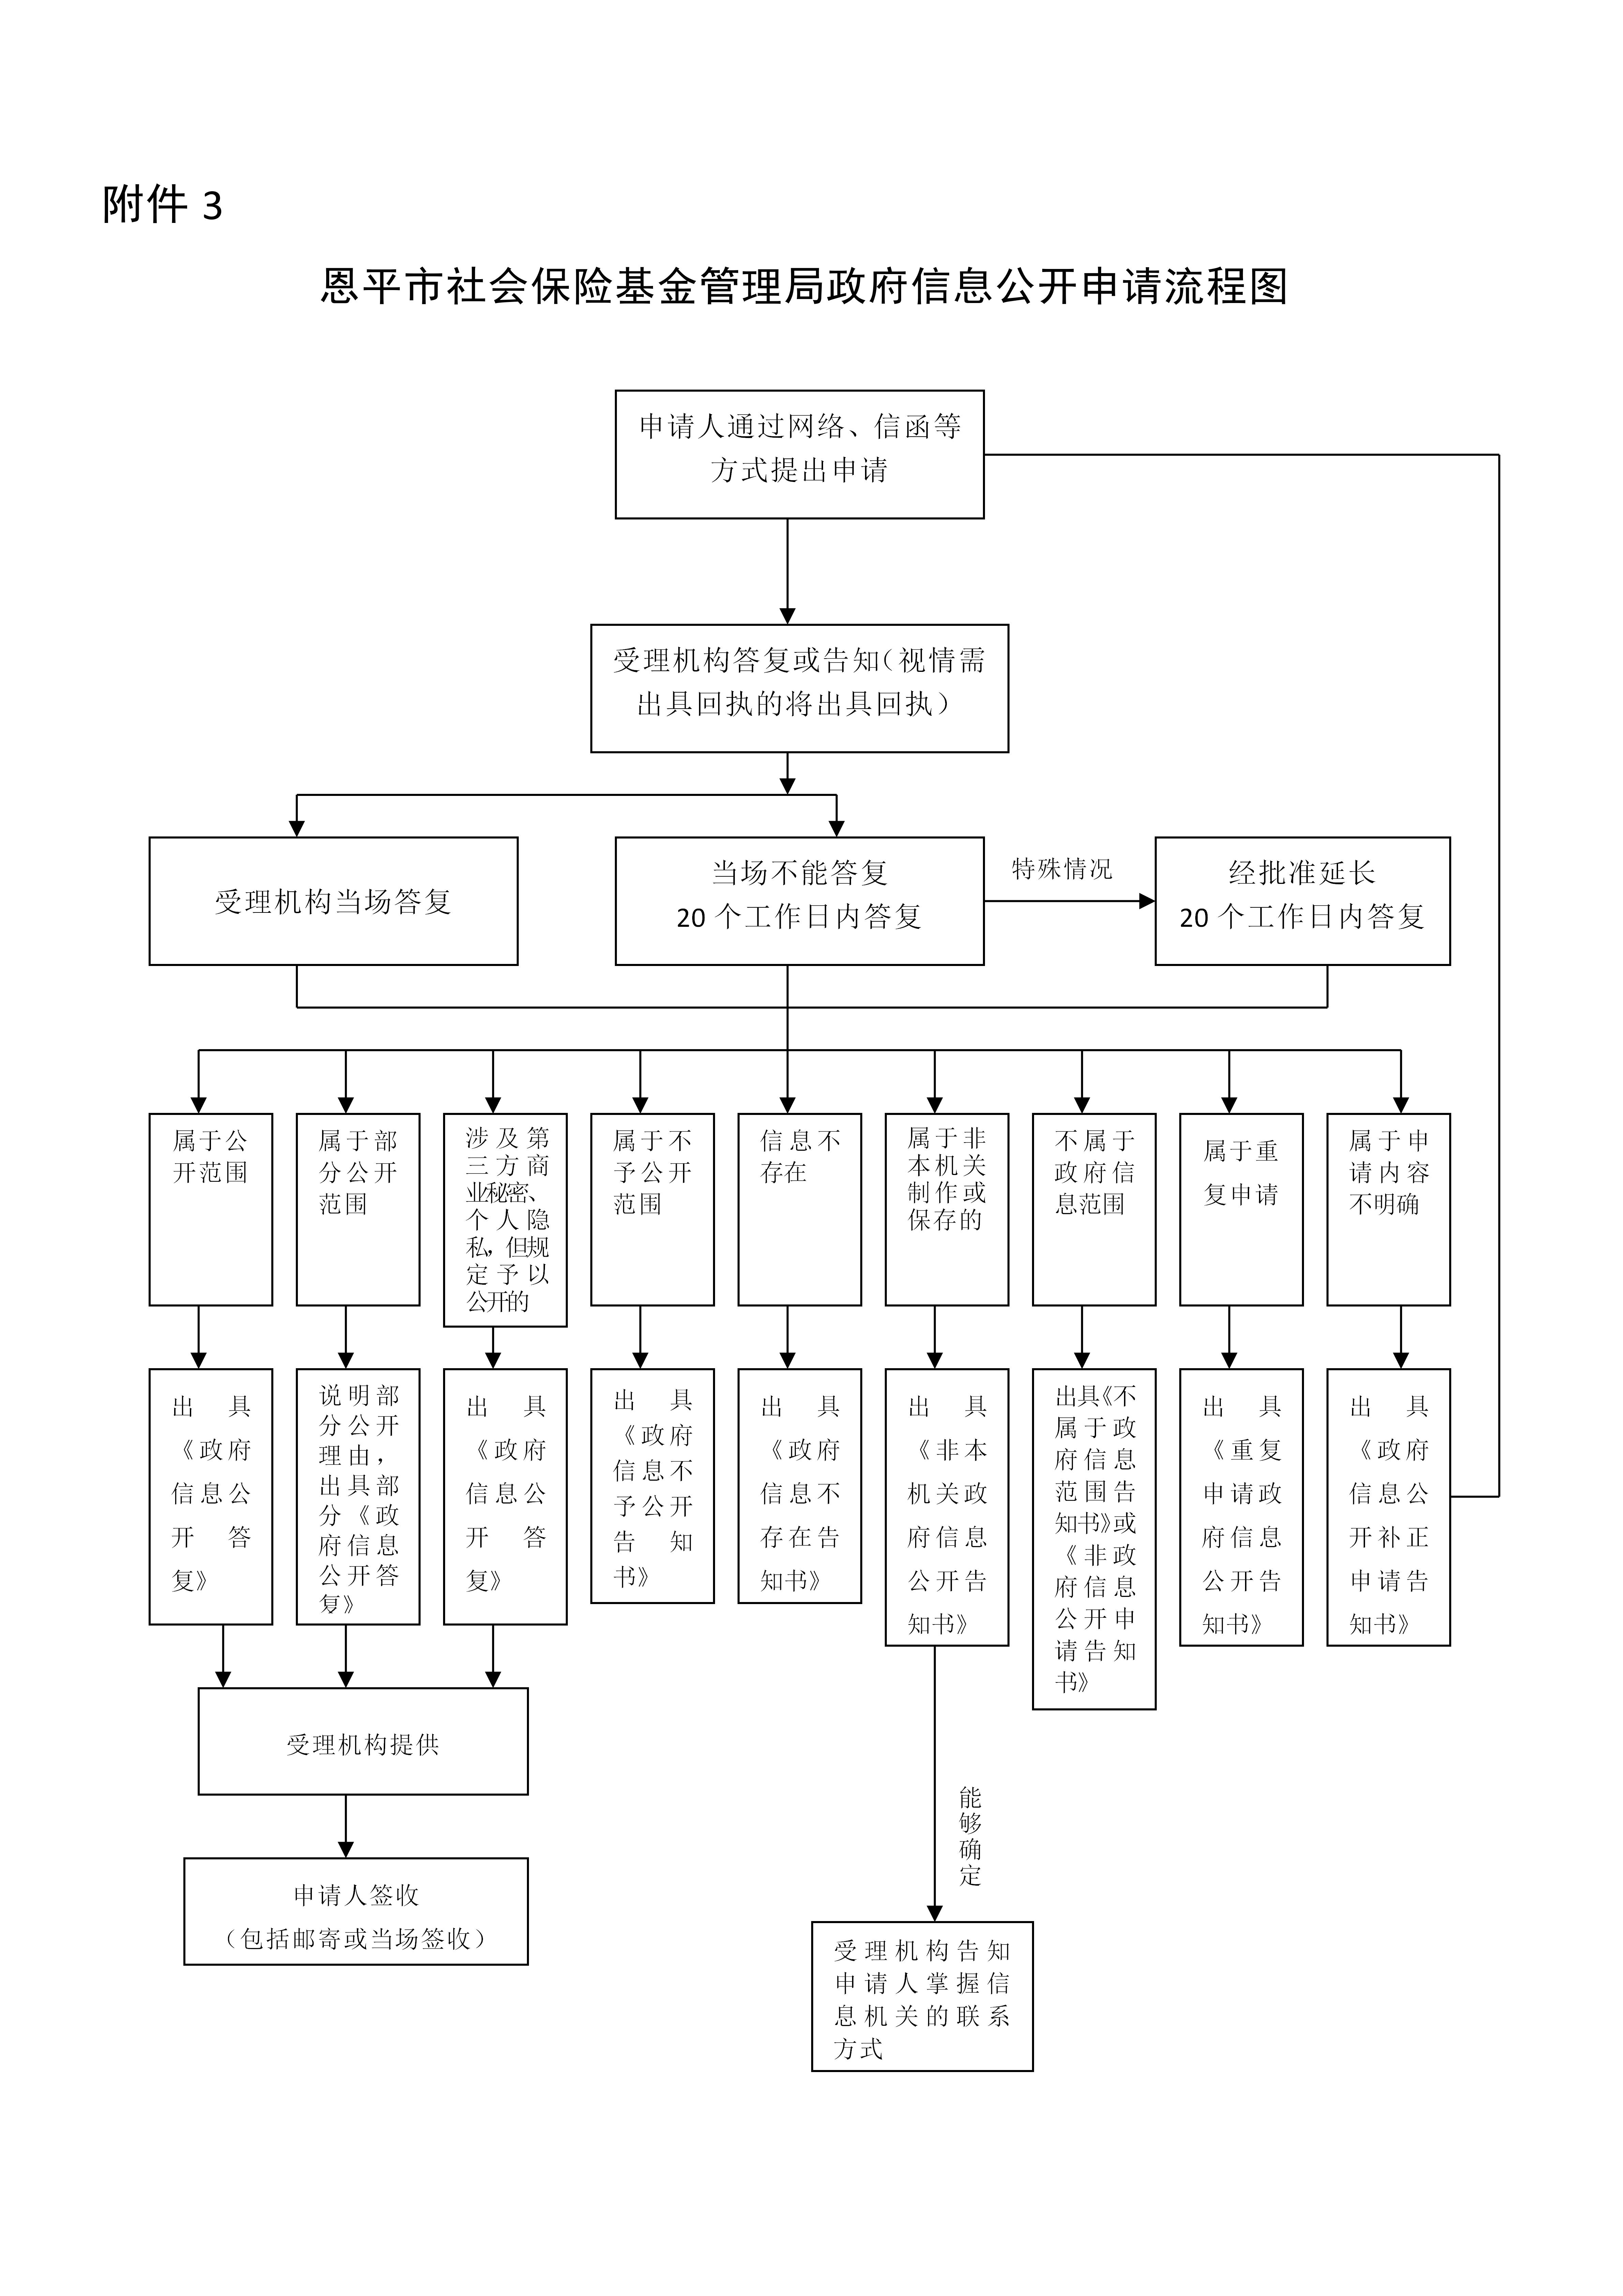 附件3：恩平市社会保险基金管理局政府信息公开申请流程图(1)_01.jpg